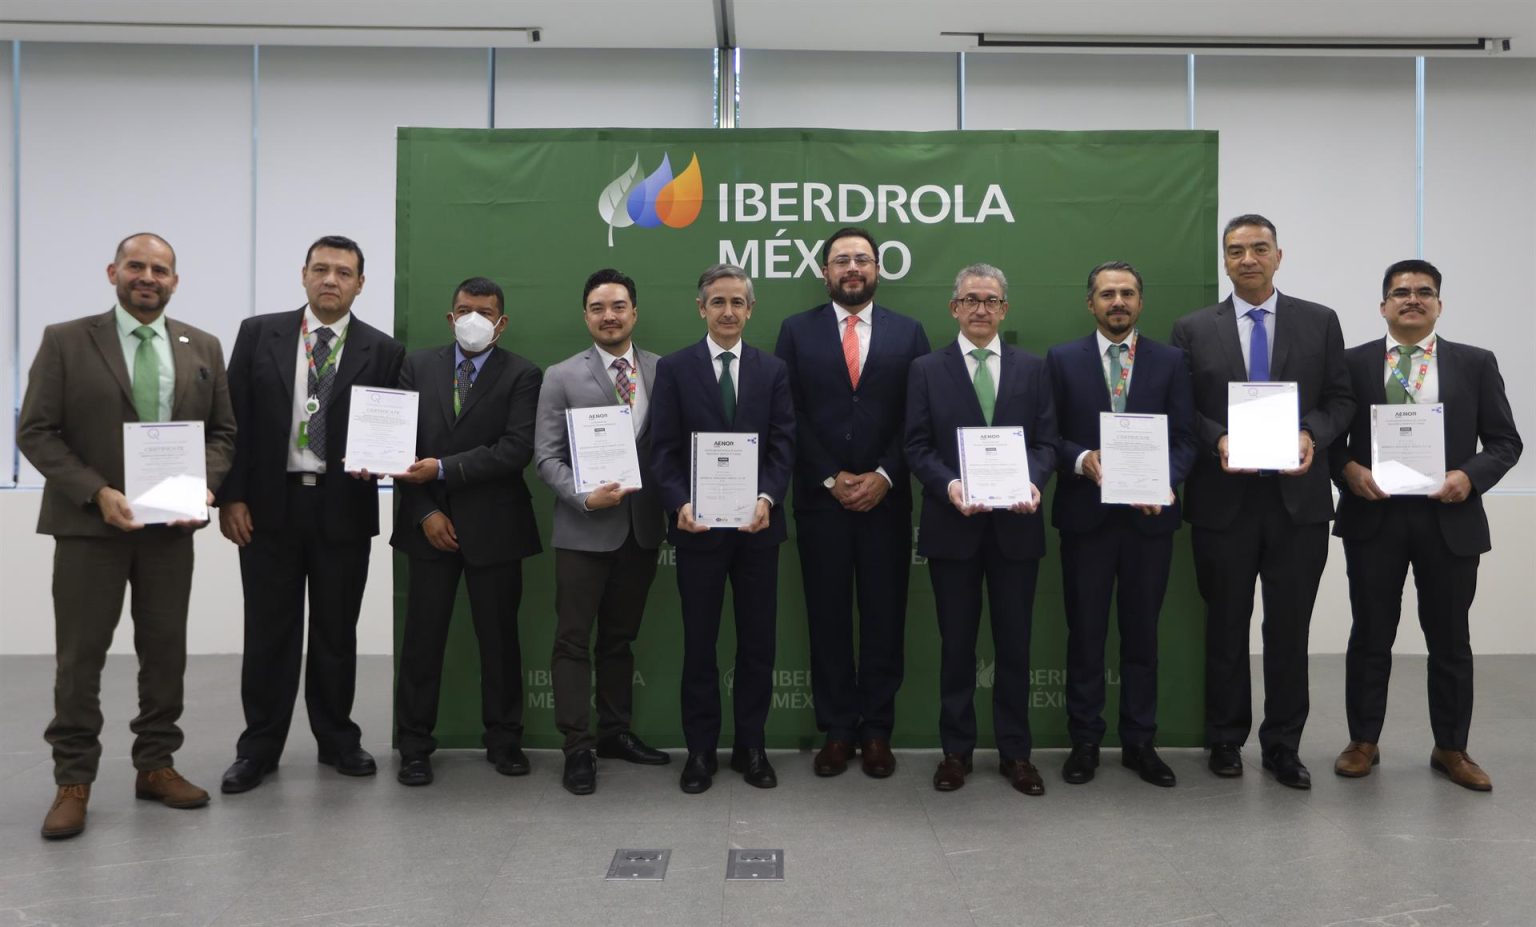 Fotografía cedida hoy por Iberdrola MéxicO que muestra al el CEO de Iberdrola México, Enrique Alba(5-i) acompañado de otros funcionarios durante la entrega de la certificación ISO 14001:2015 en la Ciudad de México (México). EFE/Iberdrola/SOLO USO EDITORIAL/SOLO DISPONIBLE PARA ILUSTRAR LA NOTICIA QUE ACOMPAÑA(CRÉDITO OBLIGATORIO)